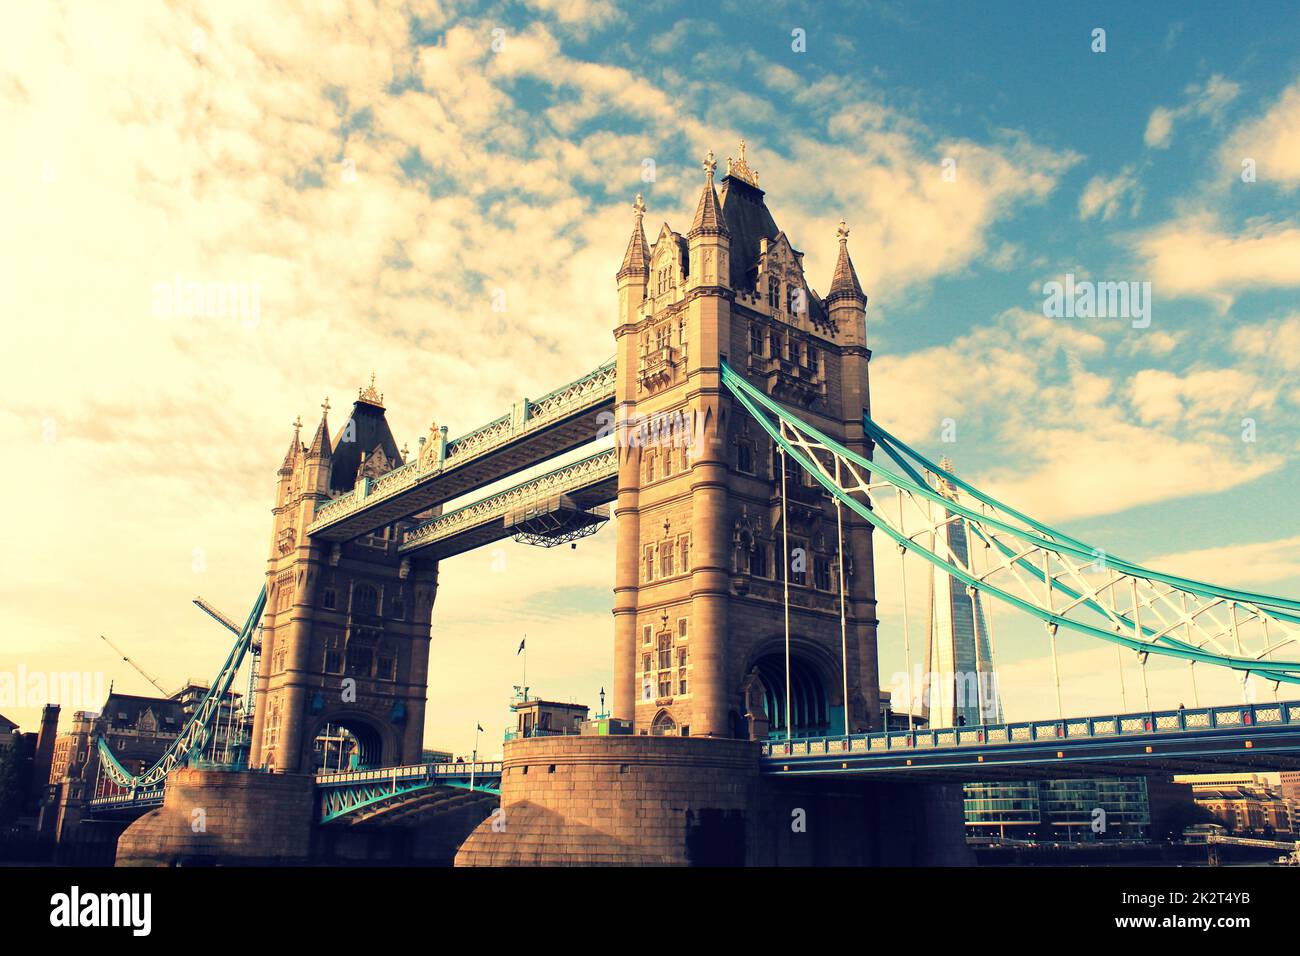 Tower Bridge à Londres, au Royaume-Uni. Coucher du soleil avec de beaux nuages. L'ouverture du pont-levis. L'un des symboles anglais Banque D'Images